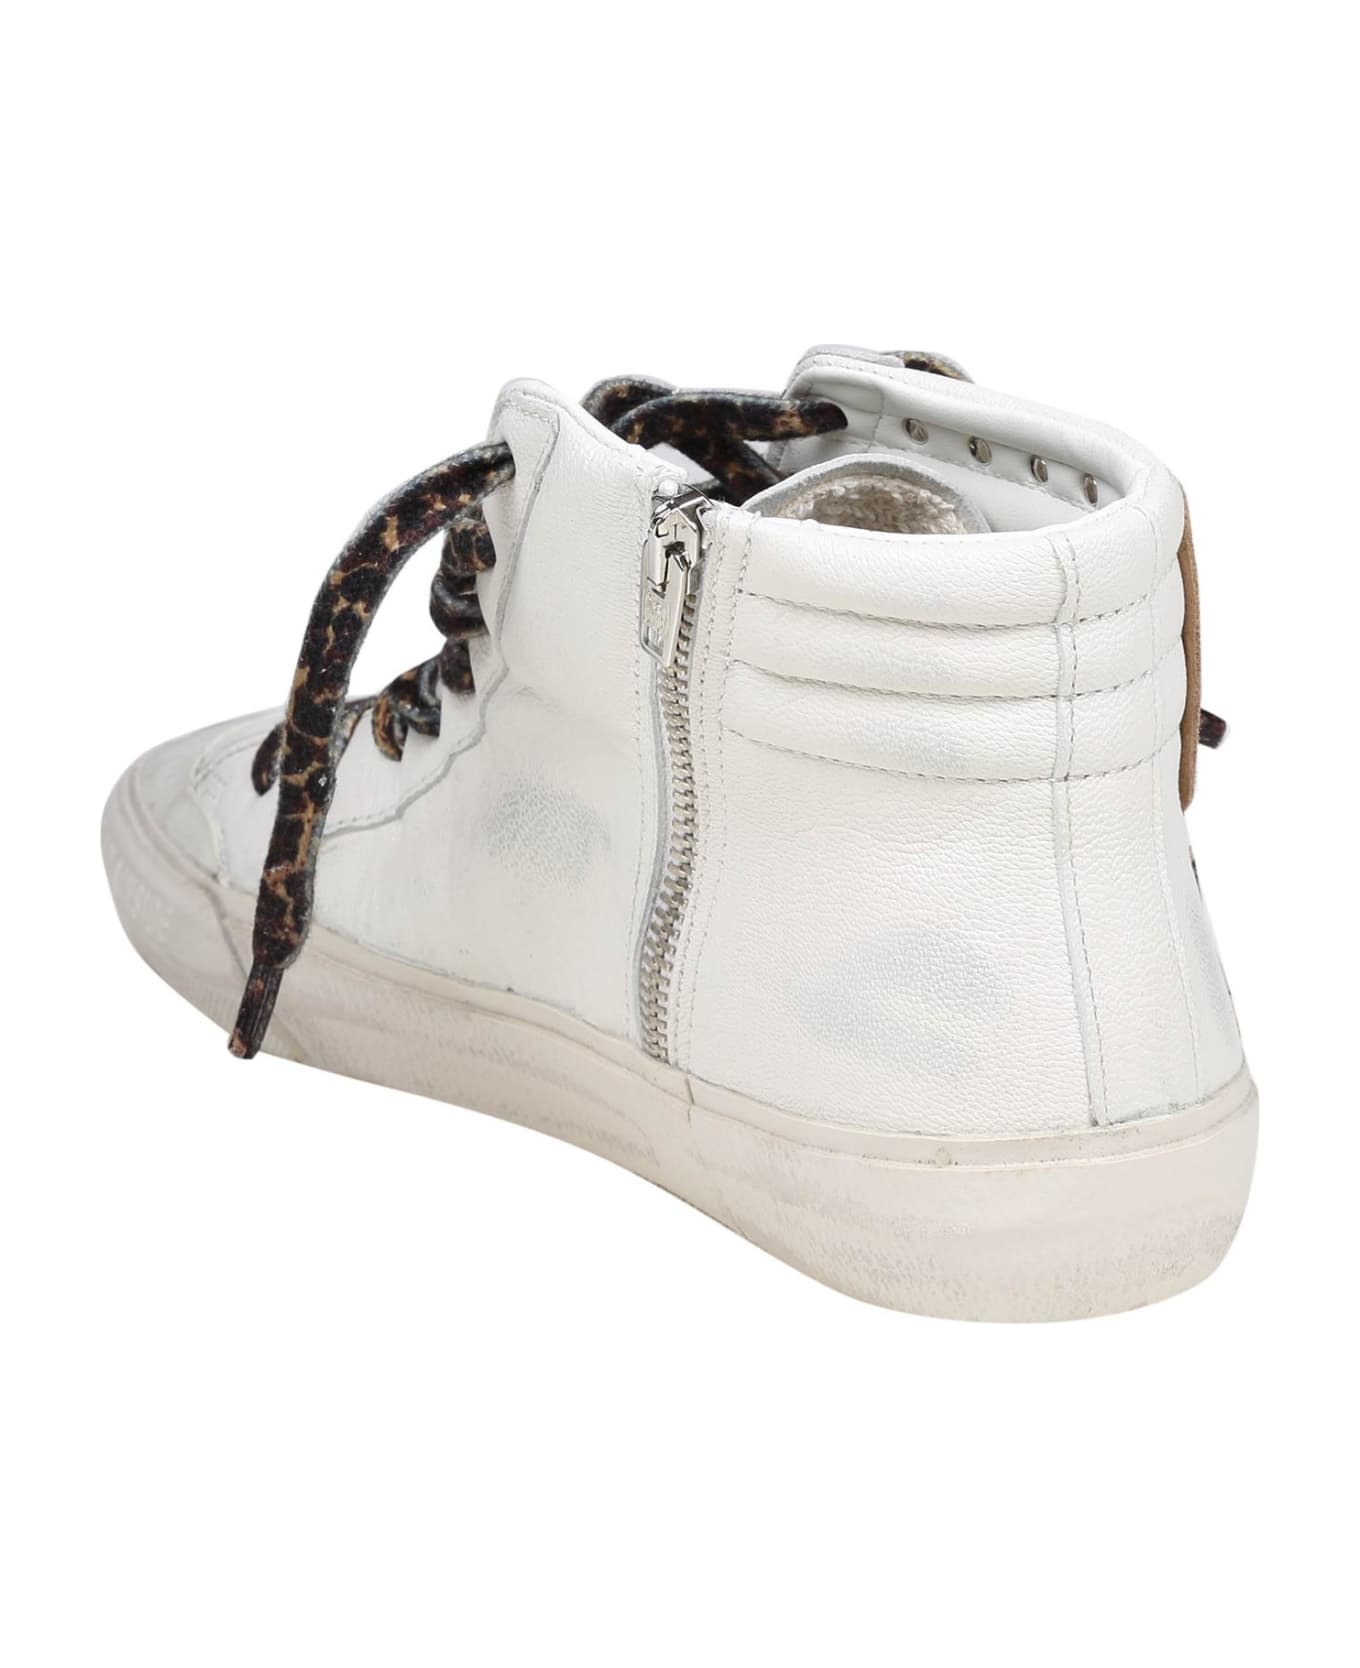 Golden Goose Slide Slide Penstar Sneakers In White Leather - White/Platinum